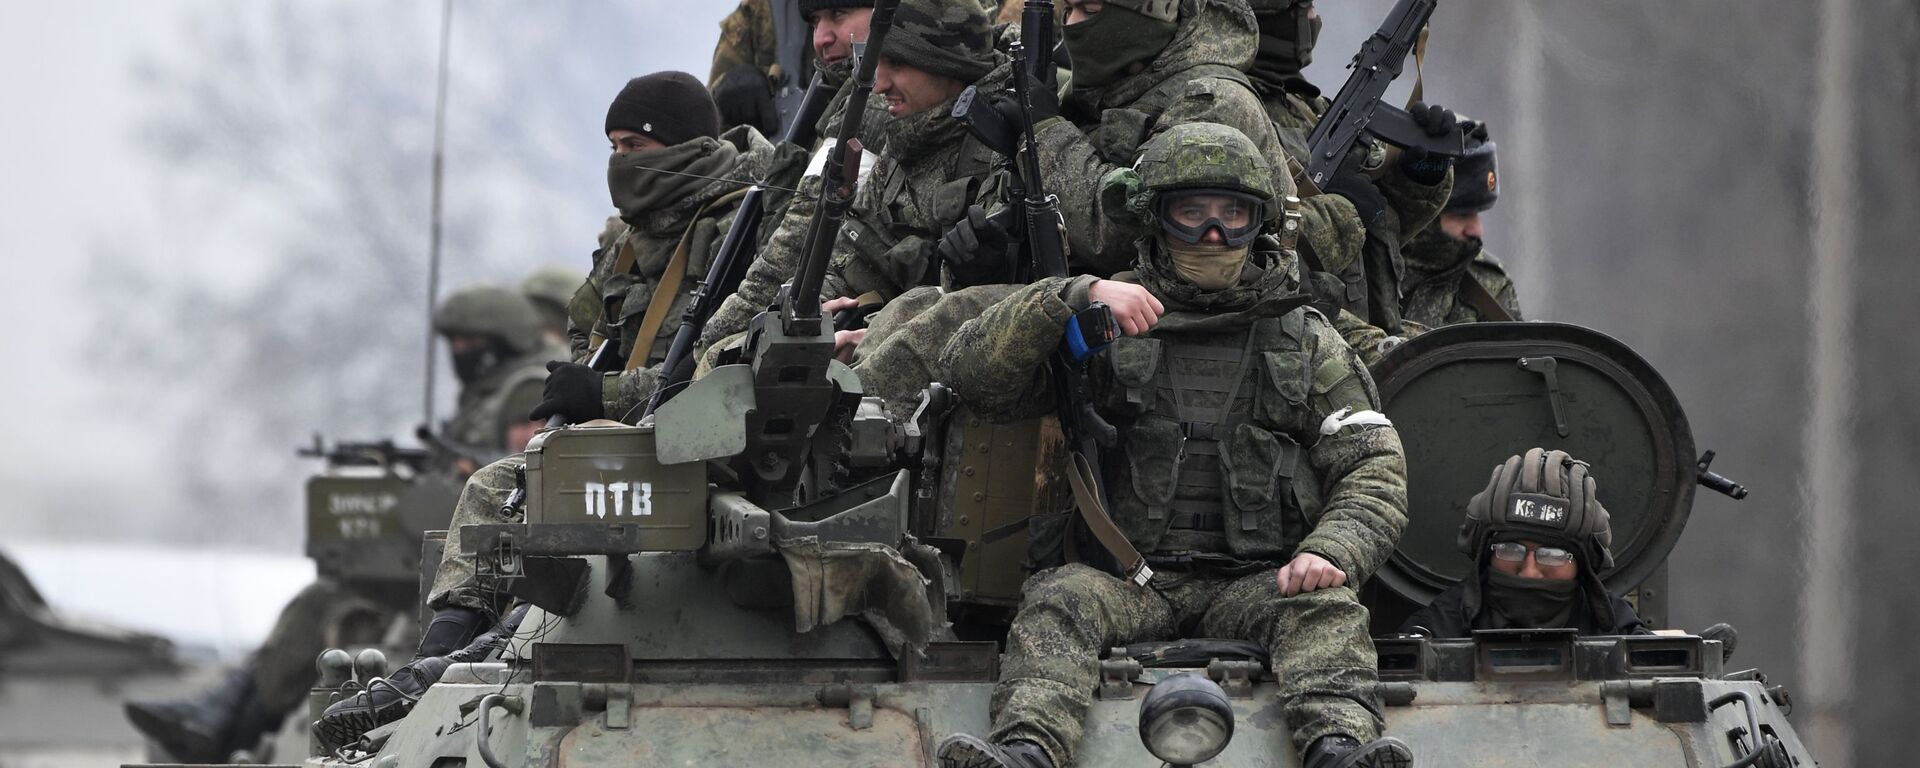 قوات الجيش الروسي في مدينة أرميناسك على حدود روسيا و أوكرانيا، 26 فبراير 2022  - سبوتنيك عربي, 1920, 11.04.2022